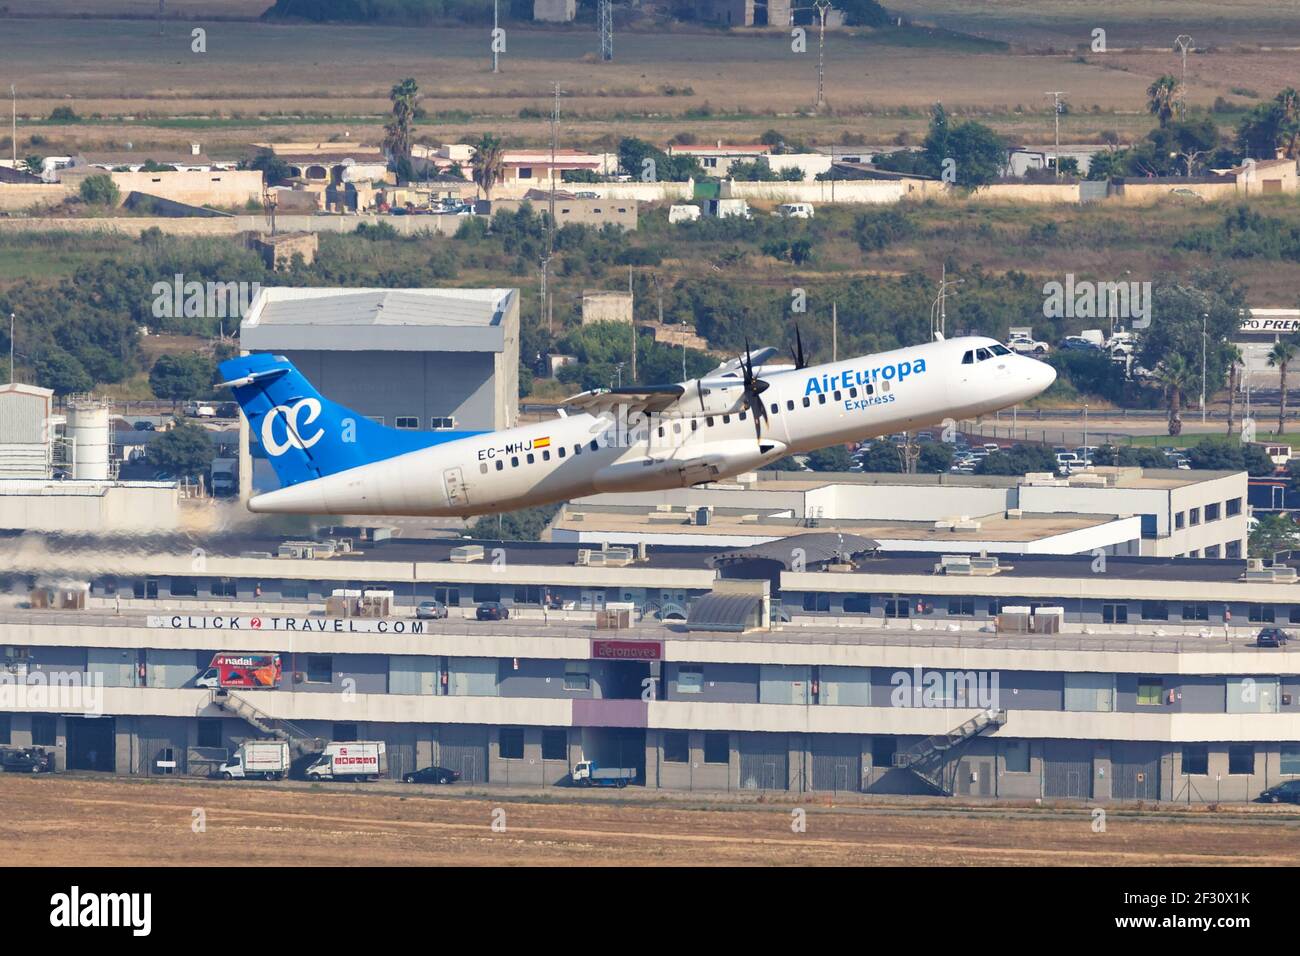 Palma de Mallorca, Spagna - 21 luglio 2018: Foto aerea di un aereo Air Europa Express ATR-72 all'aeroporto di Palma de Mallorca in Spagna. Foto Stock